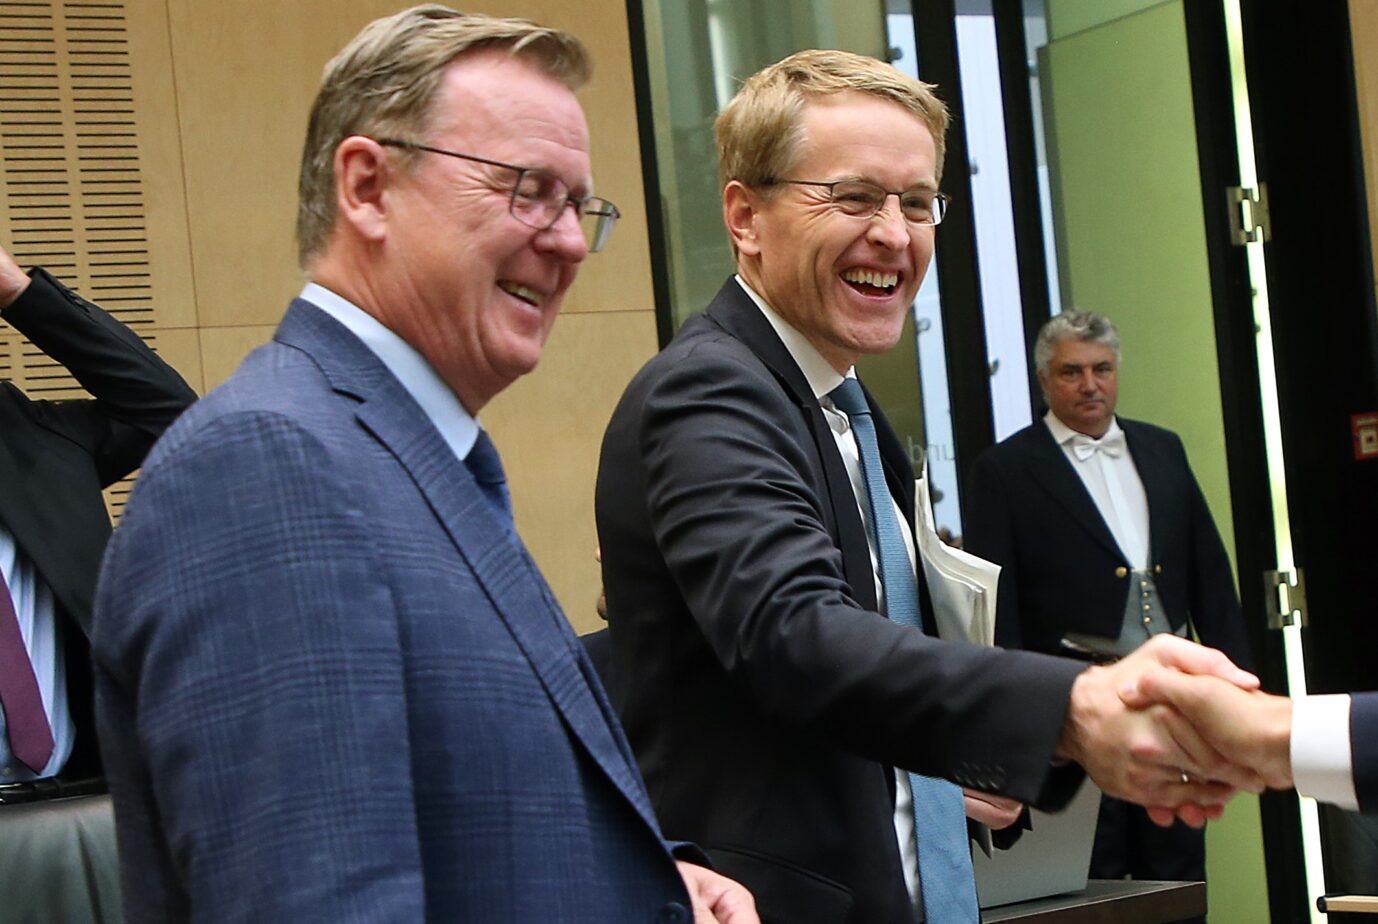  Daniel Günther (CDU) aus Schleswig-Holstein mit Amtskollege Bodo Ramelow aus Thüringen (Linke).